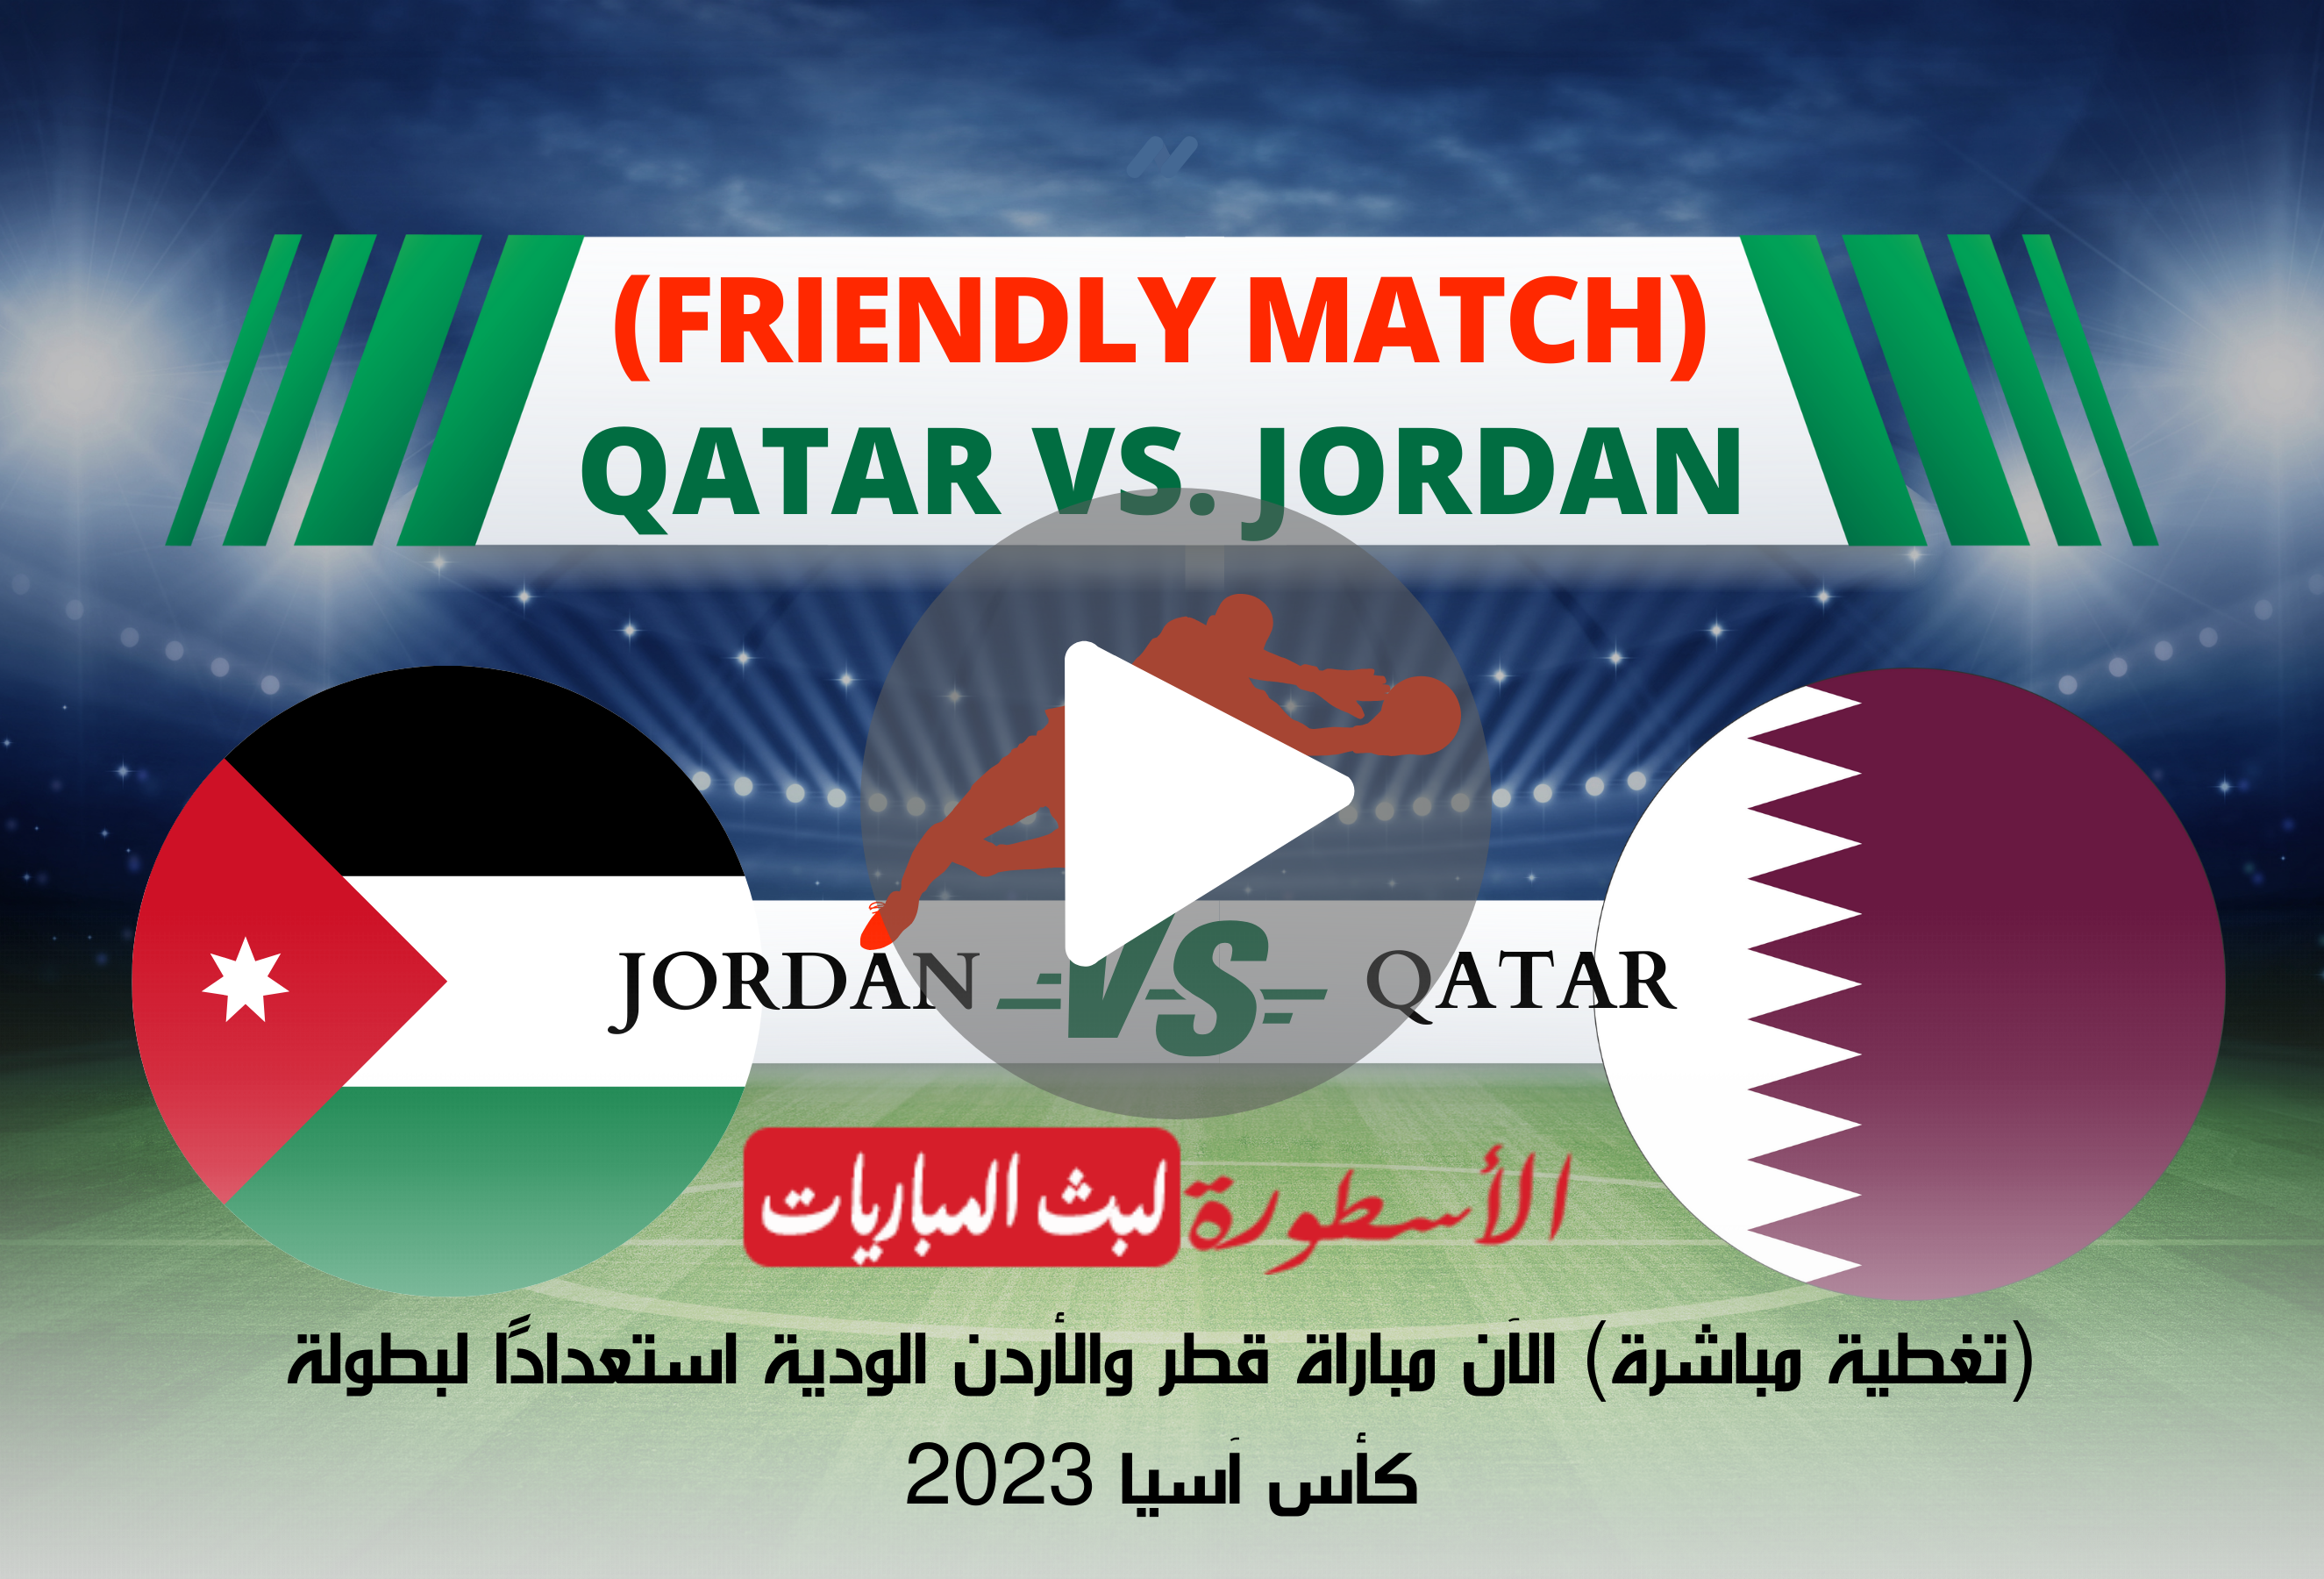 (تغطية مباشرة) الآن مباراة قطر والأردن الودية استعدادًا لبطولة كأس آسيا 2023